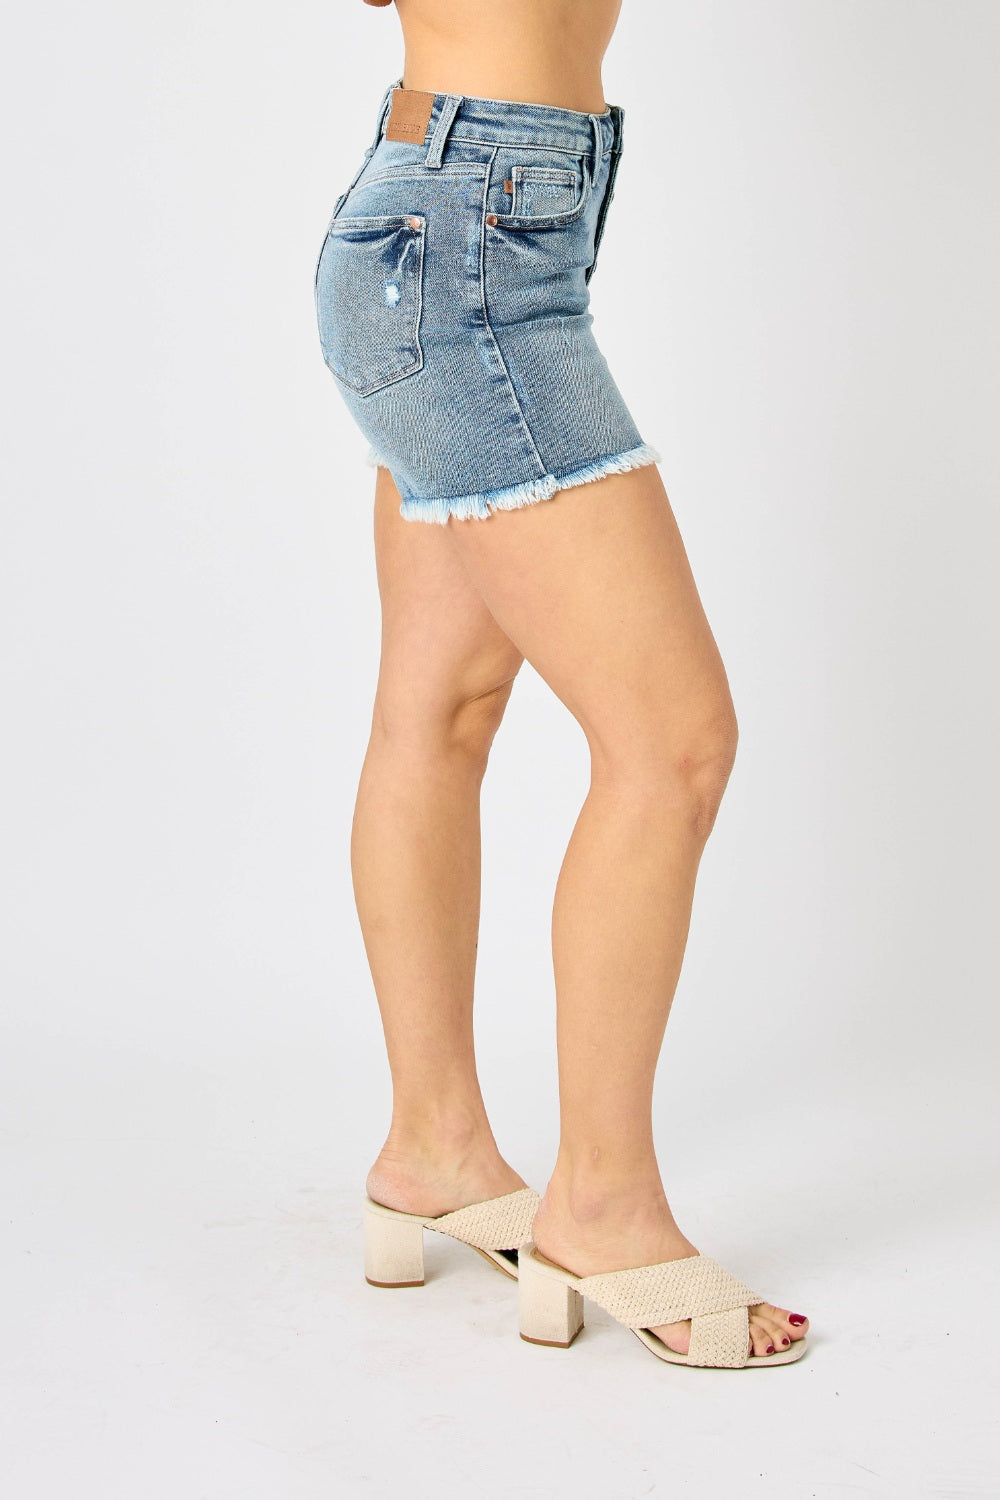 Pantalones cortos de mezclilla con dobladillo sin rematar y bragueta con botones de tamaño completo en azul Judy